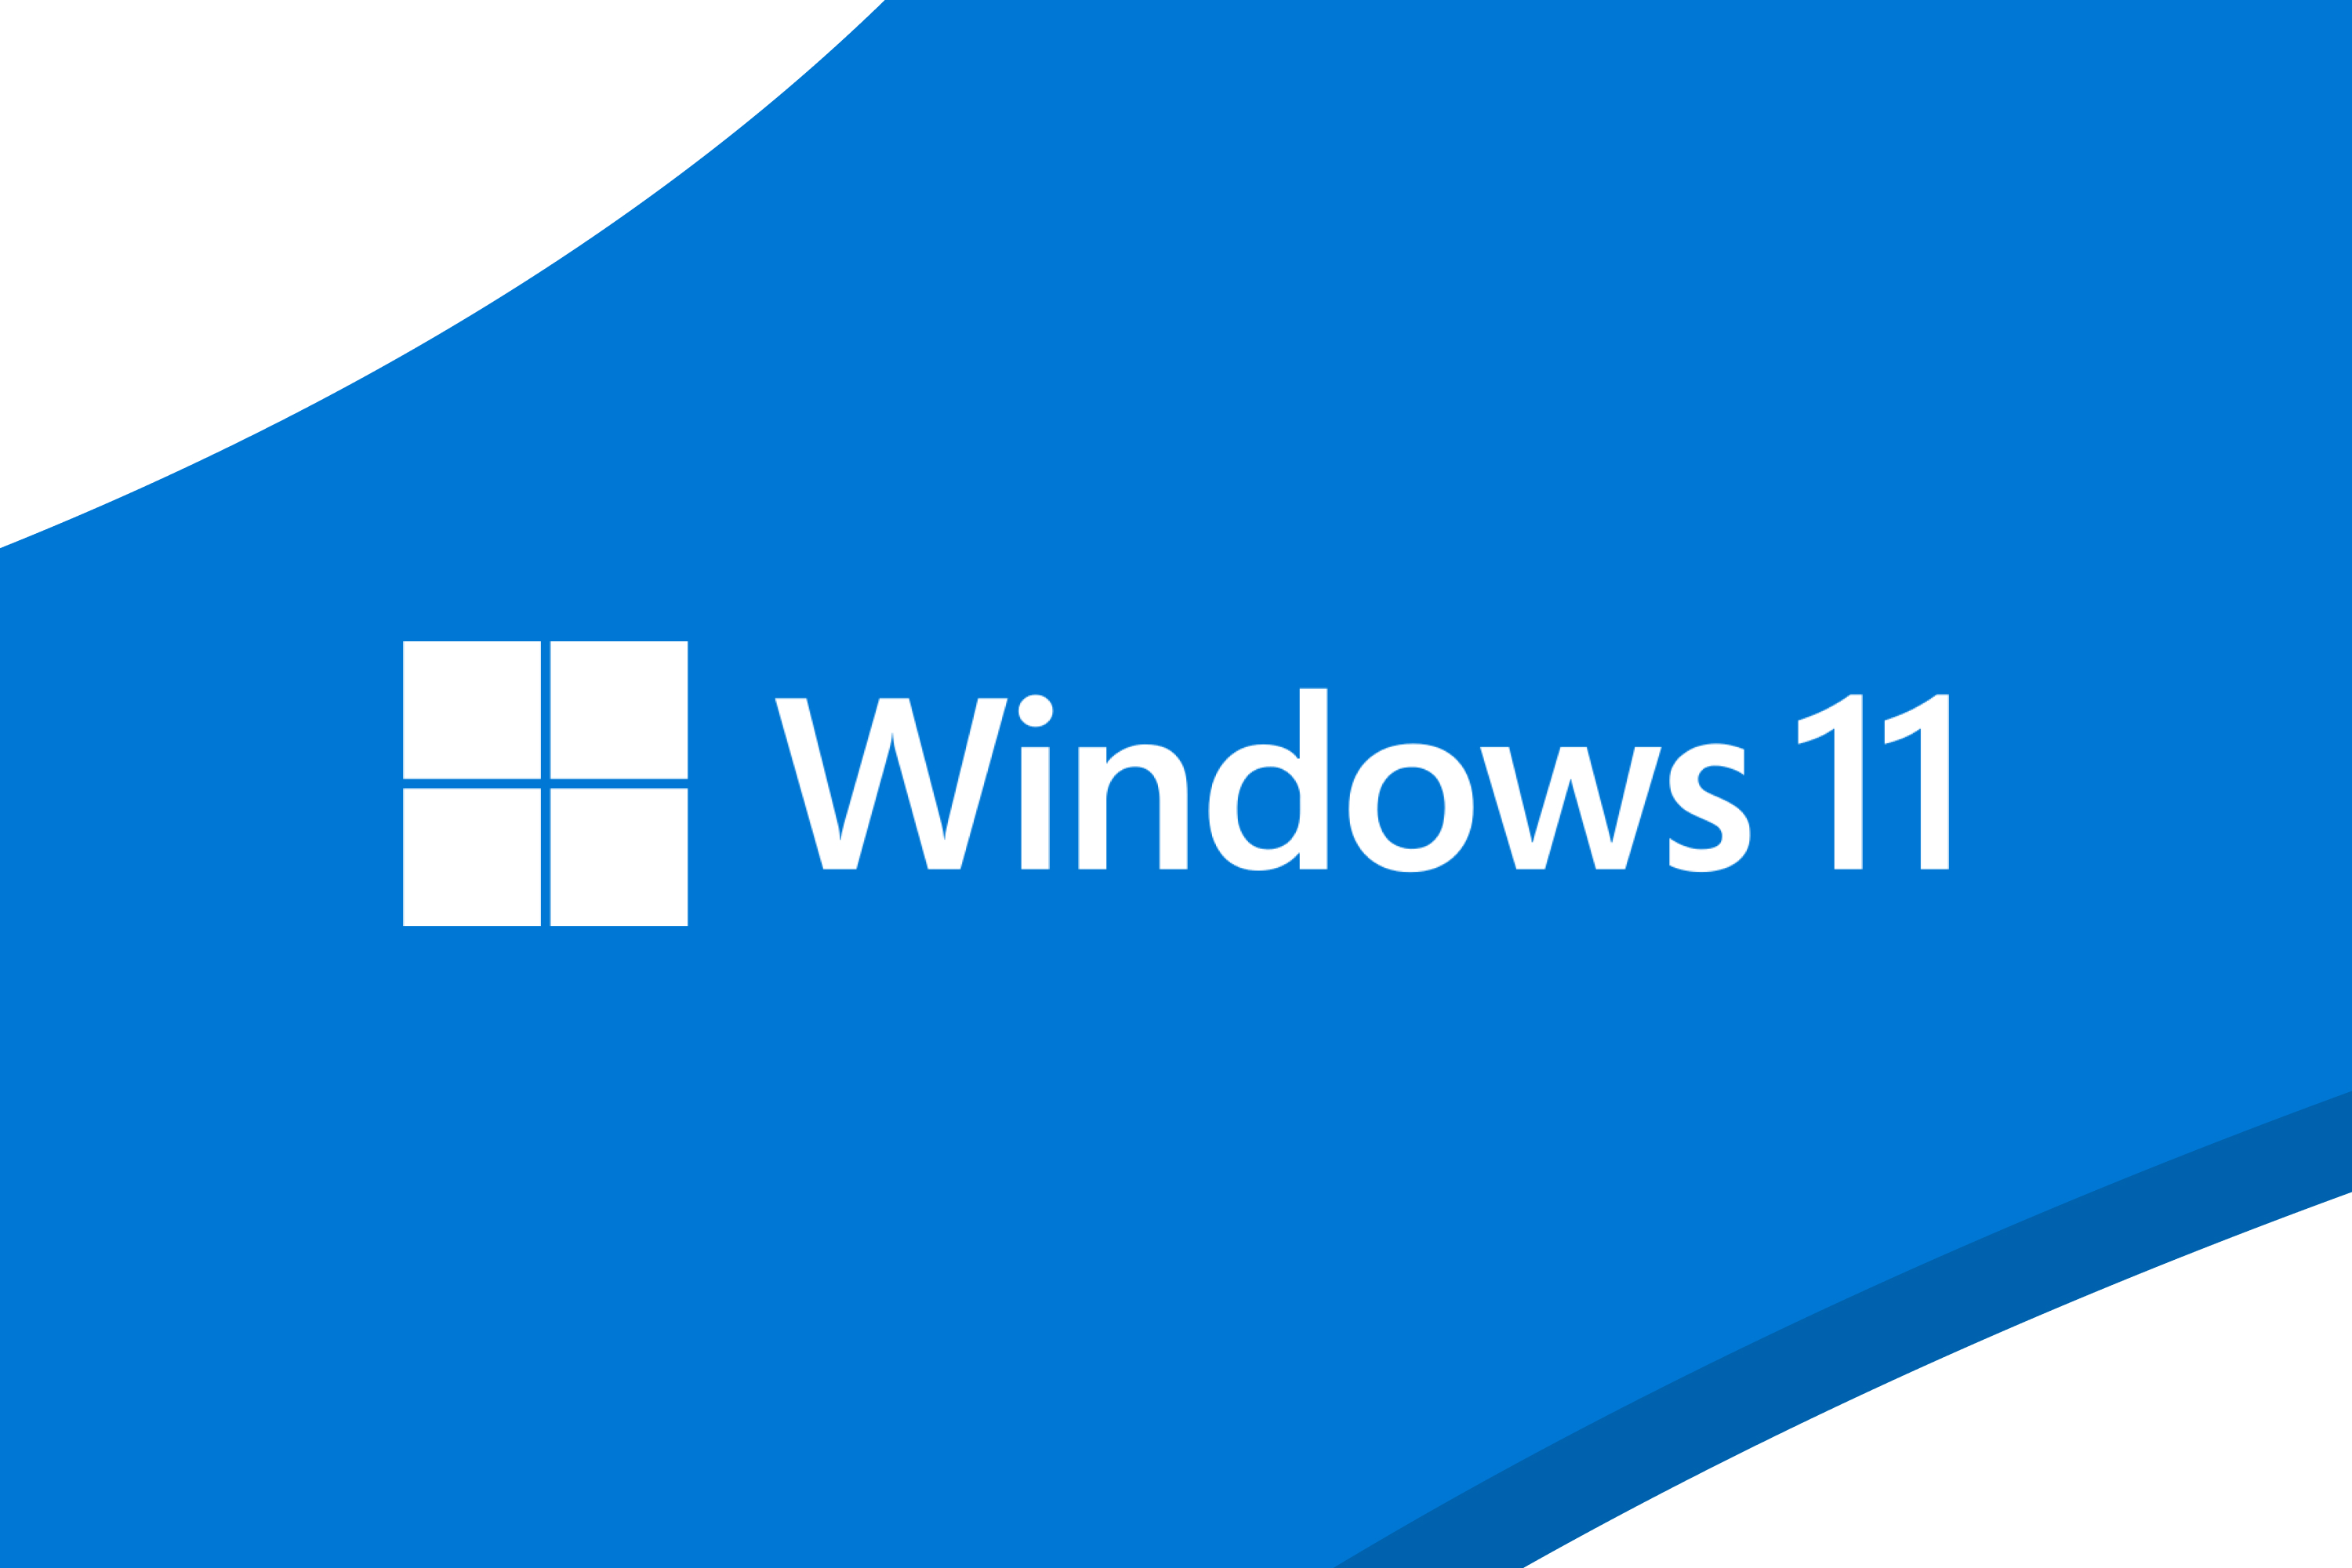 Windows 11 : le nouveau système de mise à jour vous montrera la durée de redémarrage du PC